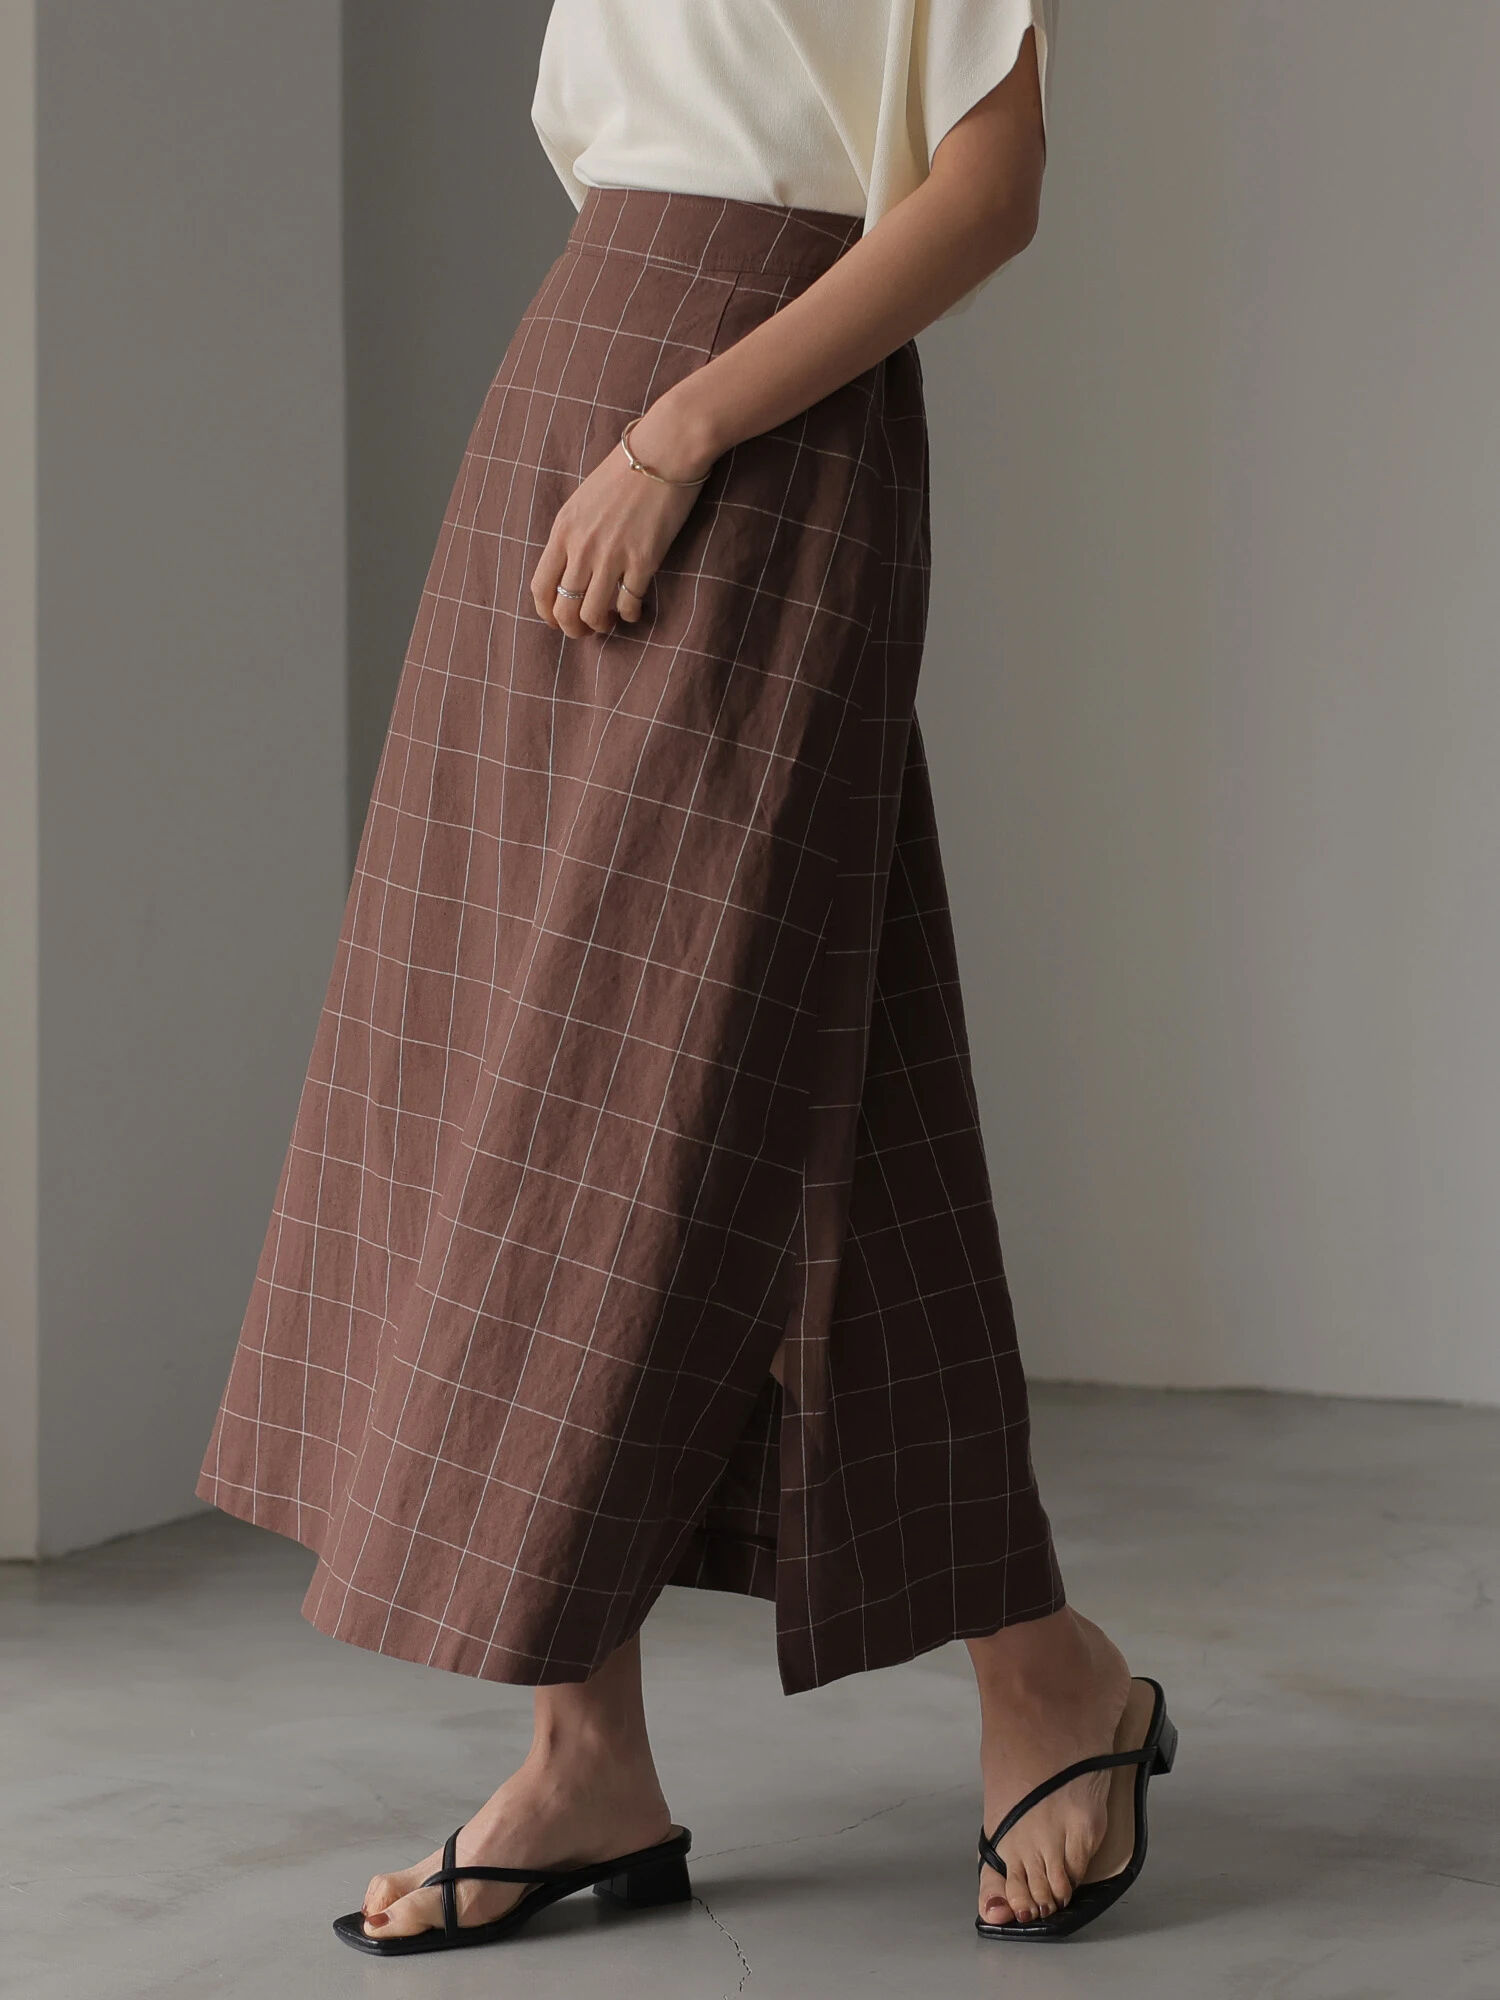 極美品 クロエ Chloe スカート ミディスカート Aラインスカート ツイード ウール ボトムス レディース 36(S相当) ブラック